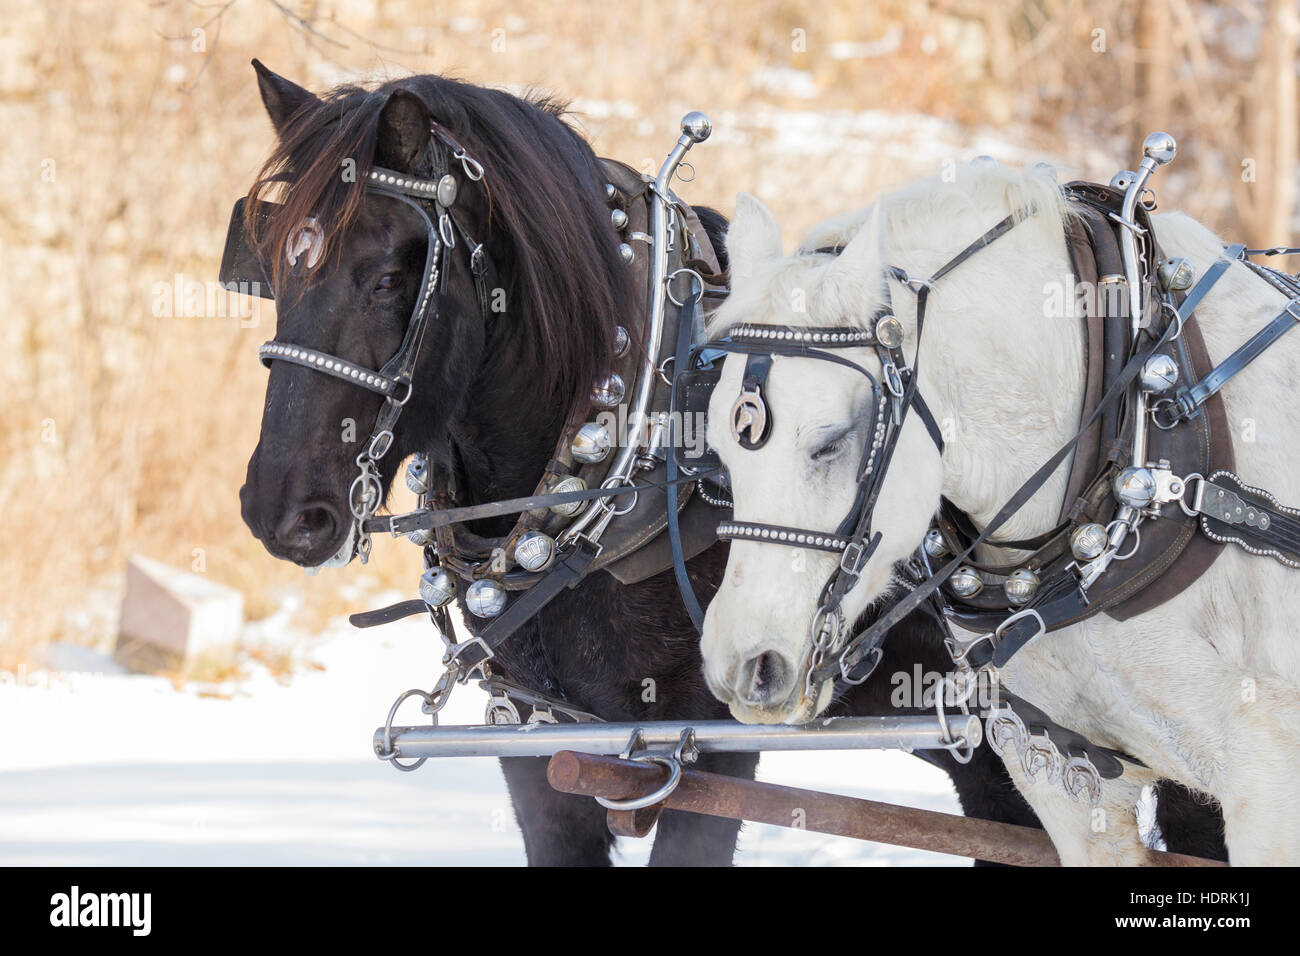 En hiver les chevaux Clydesdale Banque D'Images